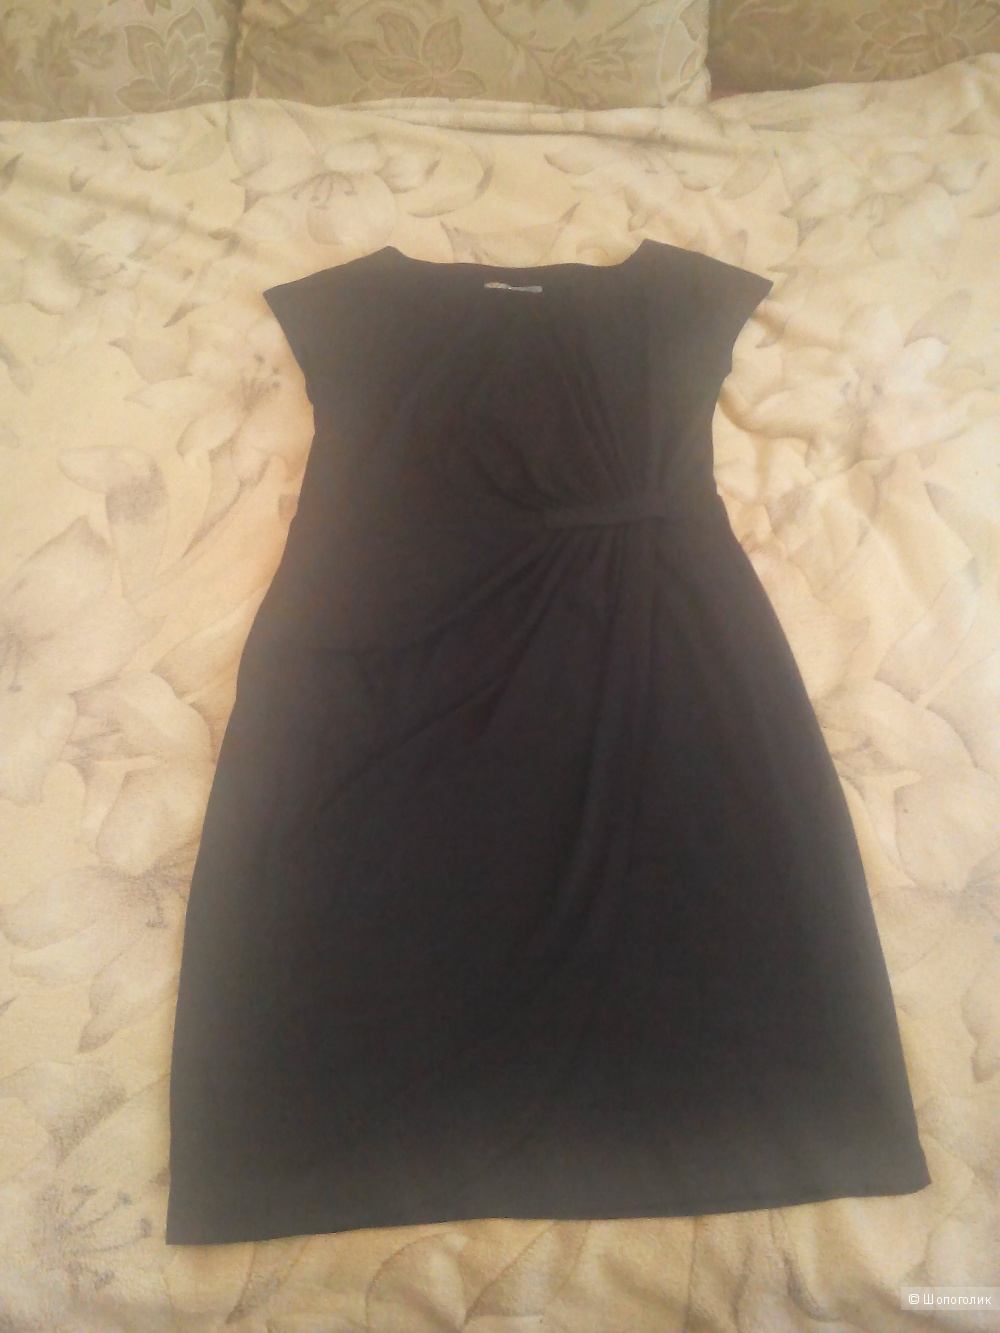 Платье черное с запахом 48размера